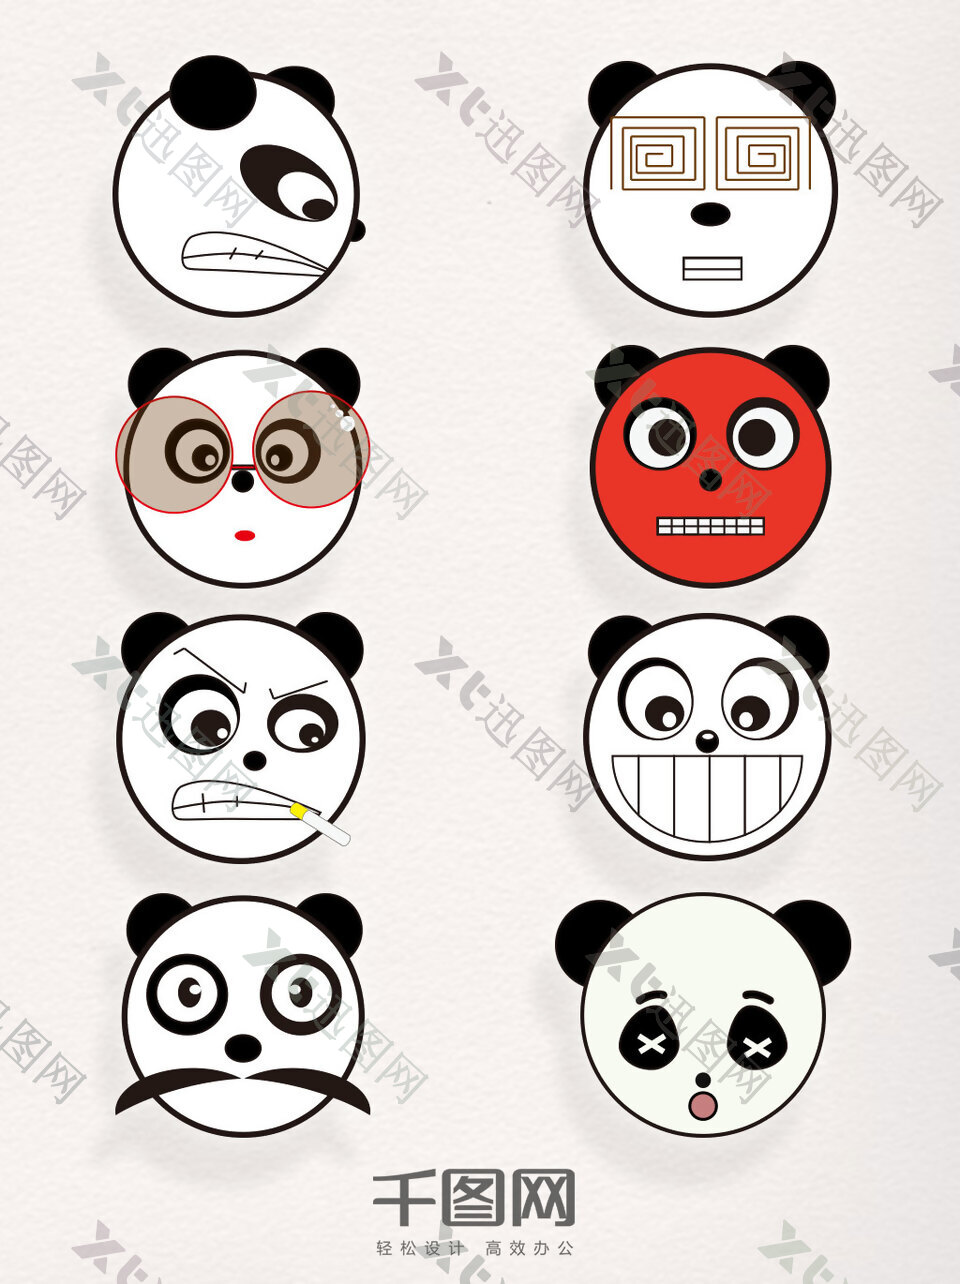 卡通熊猫素材矢量表情包元素装饰图案集合